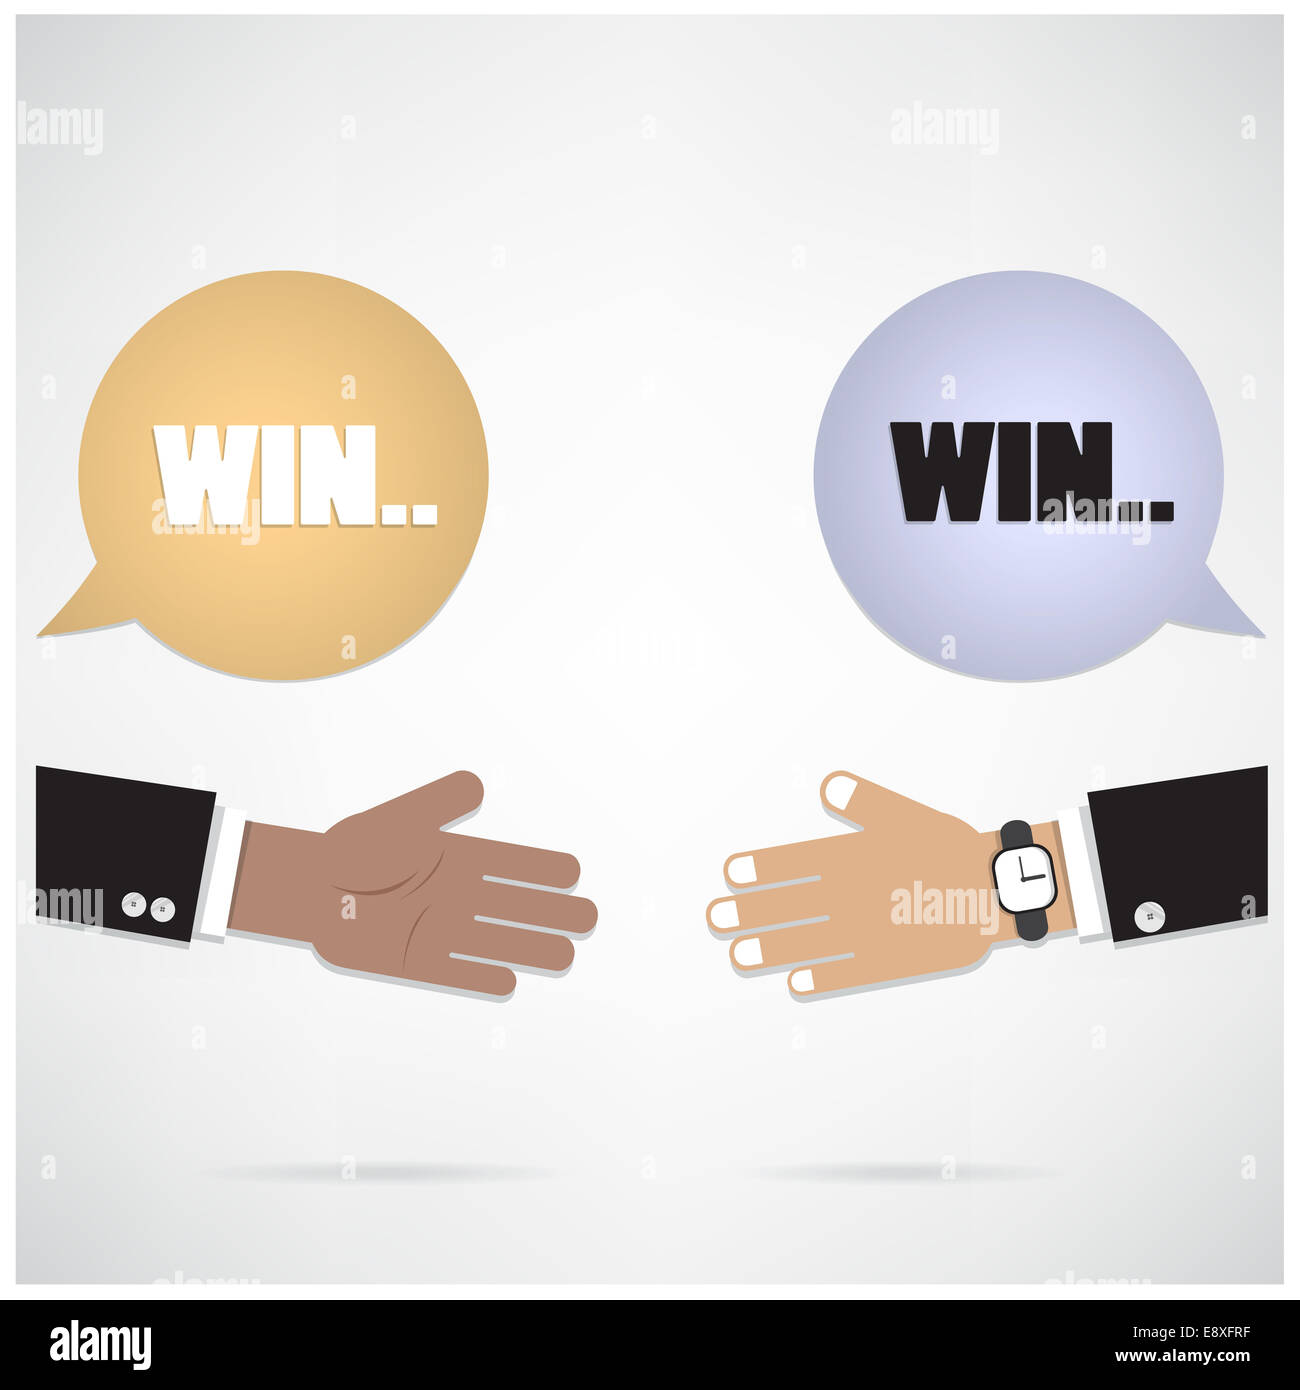 Geschäftsmann Hände mit Sprechblase. Handschlag oder Partnerschaft Konzept. Win-Win-Hintergrund. Geschäftsidee zu treffen. Stockfoto